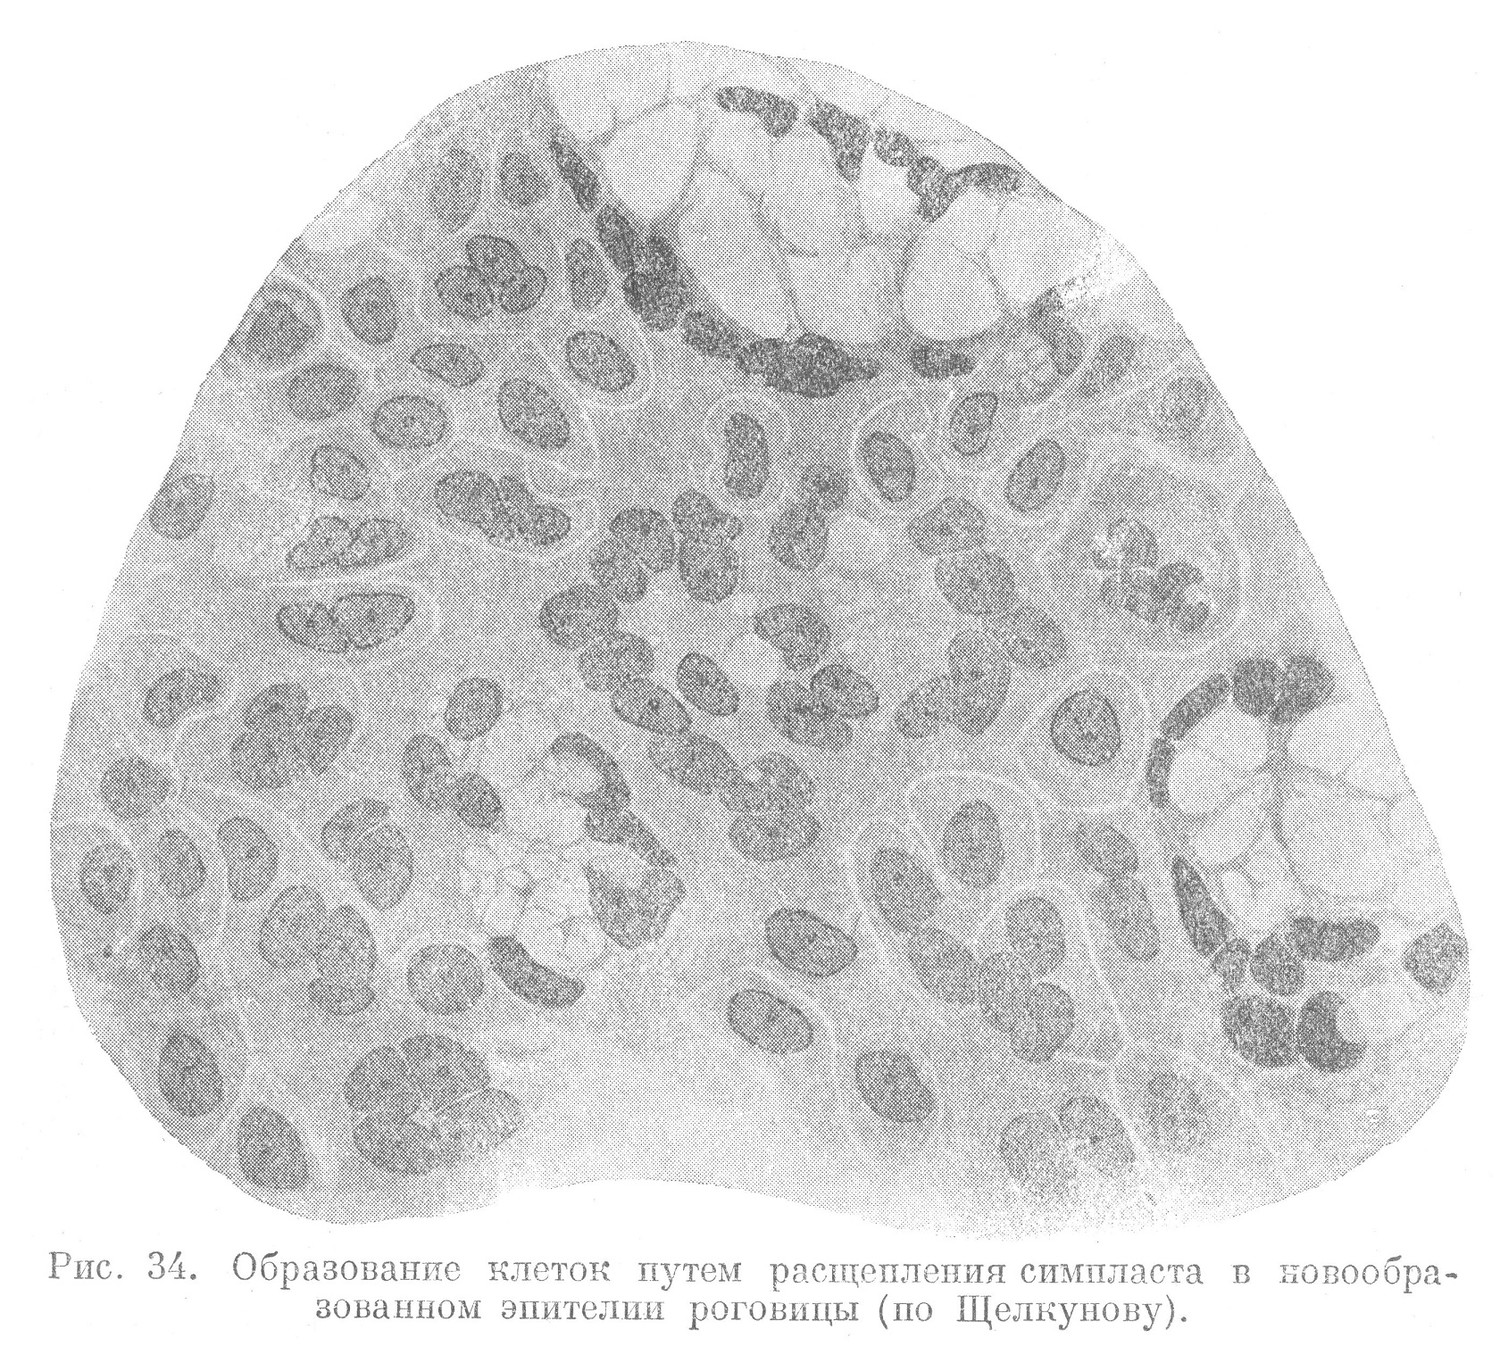 Образование клеток путем расщепления симпласта в новообразованном эпителии роговицы (по Щелкунову).